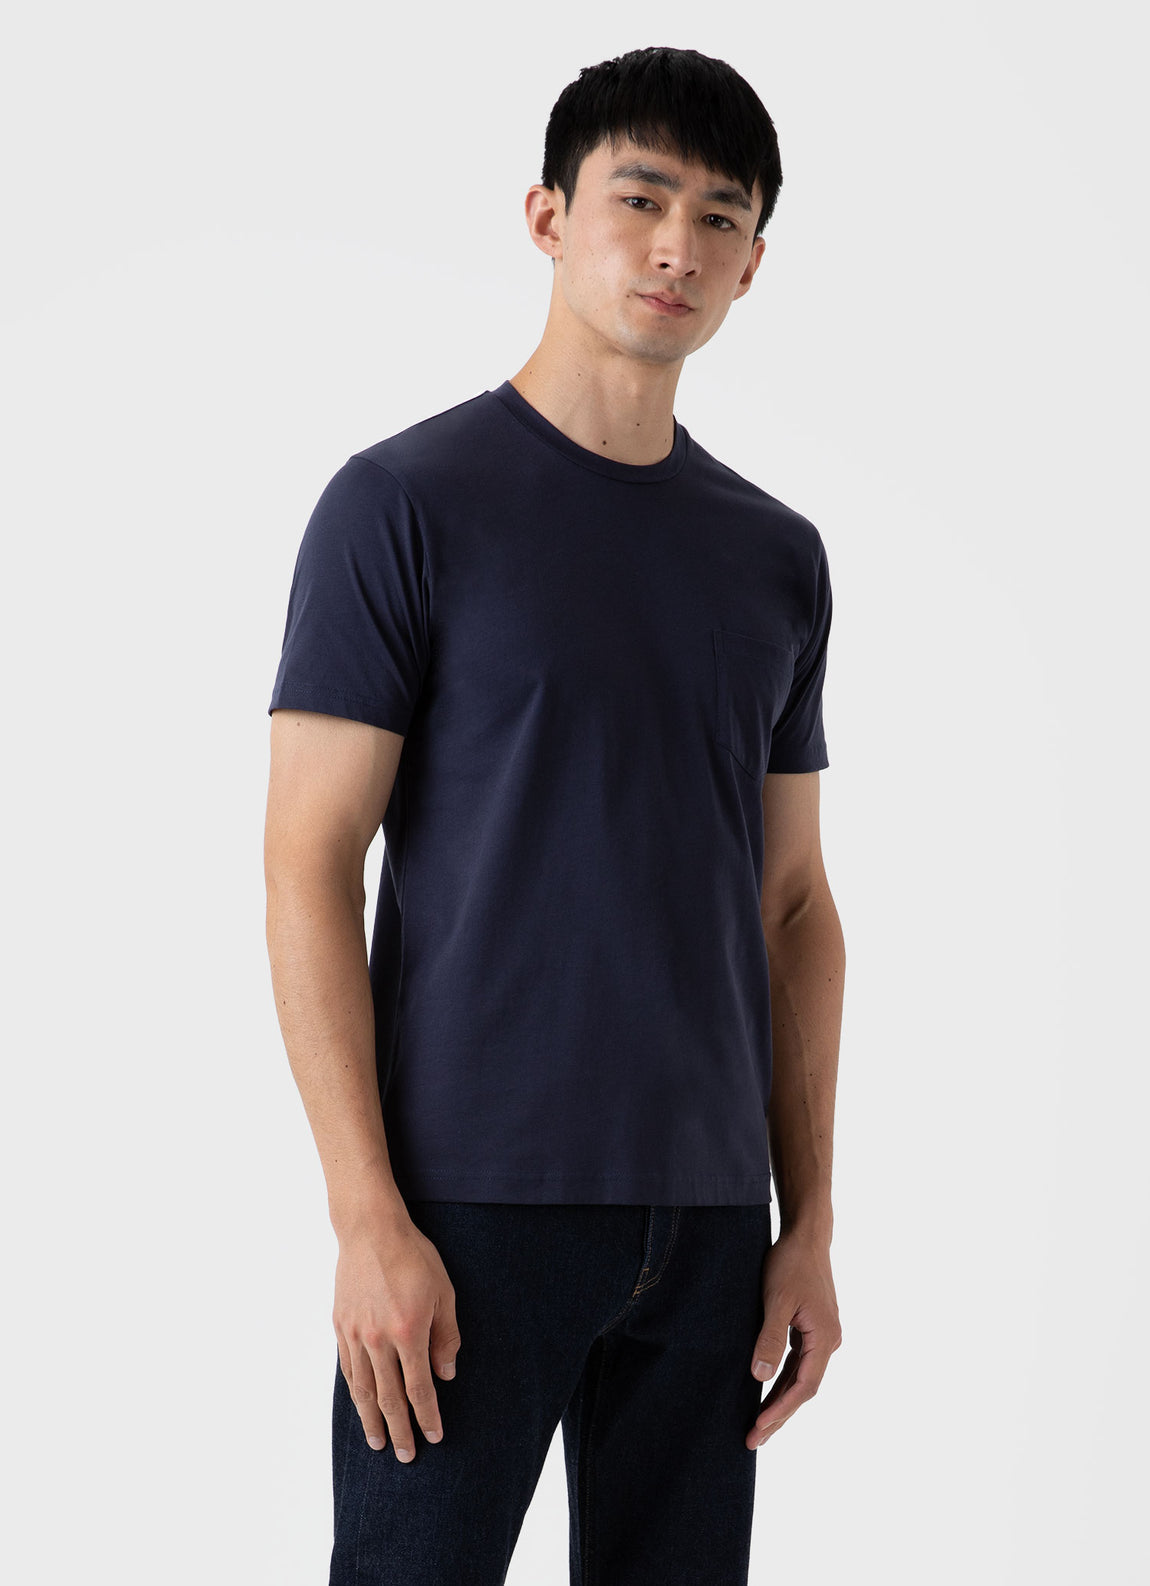 Men's Riviera Midweight Pocket T-shirt in Navy | Sunspel